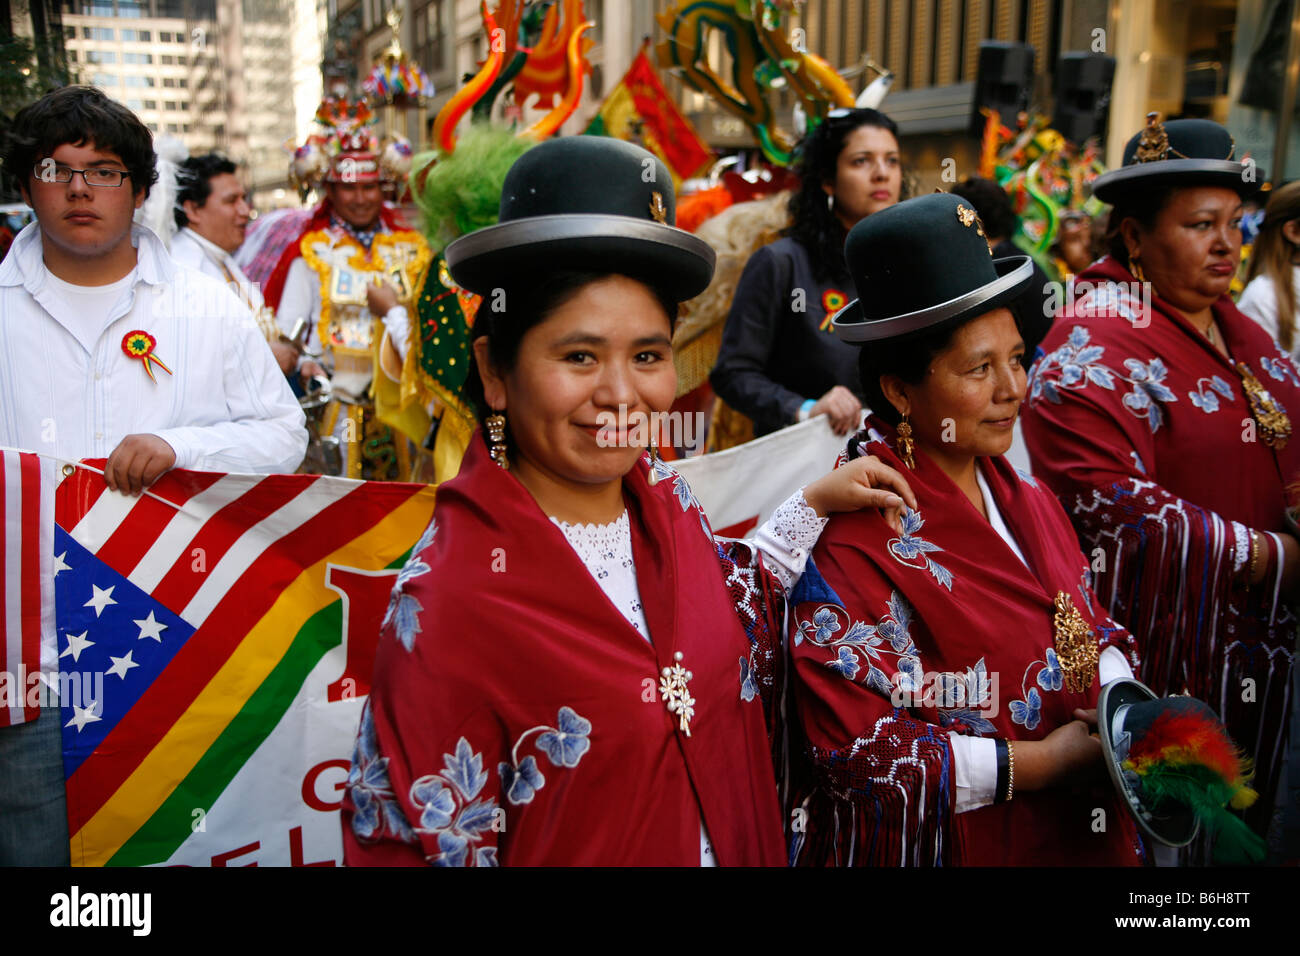 2008 Hispanic Day Parade auf der 5th Avenue NYC kostümierten Teilnehmern vertreten Bolivien in den Jährlichen Hispanic Parade Stockfoto